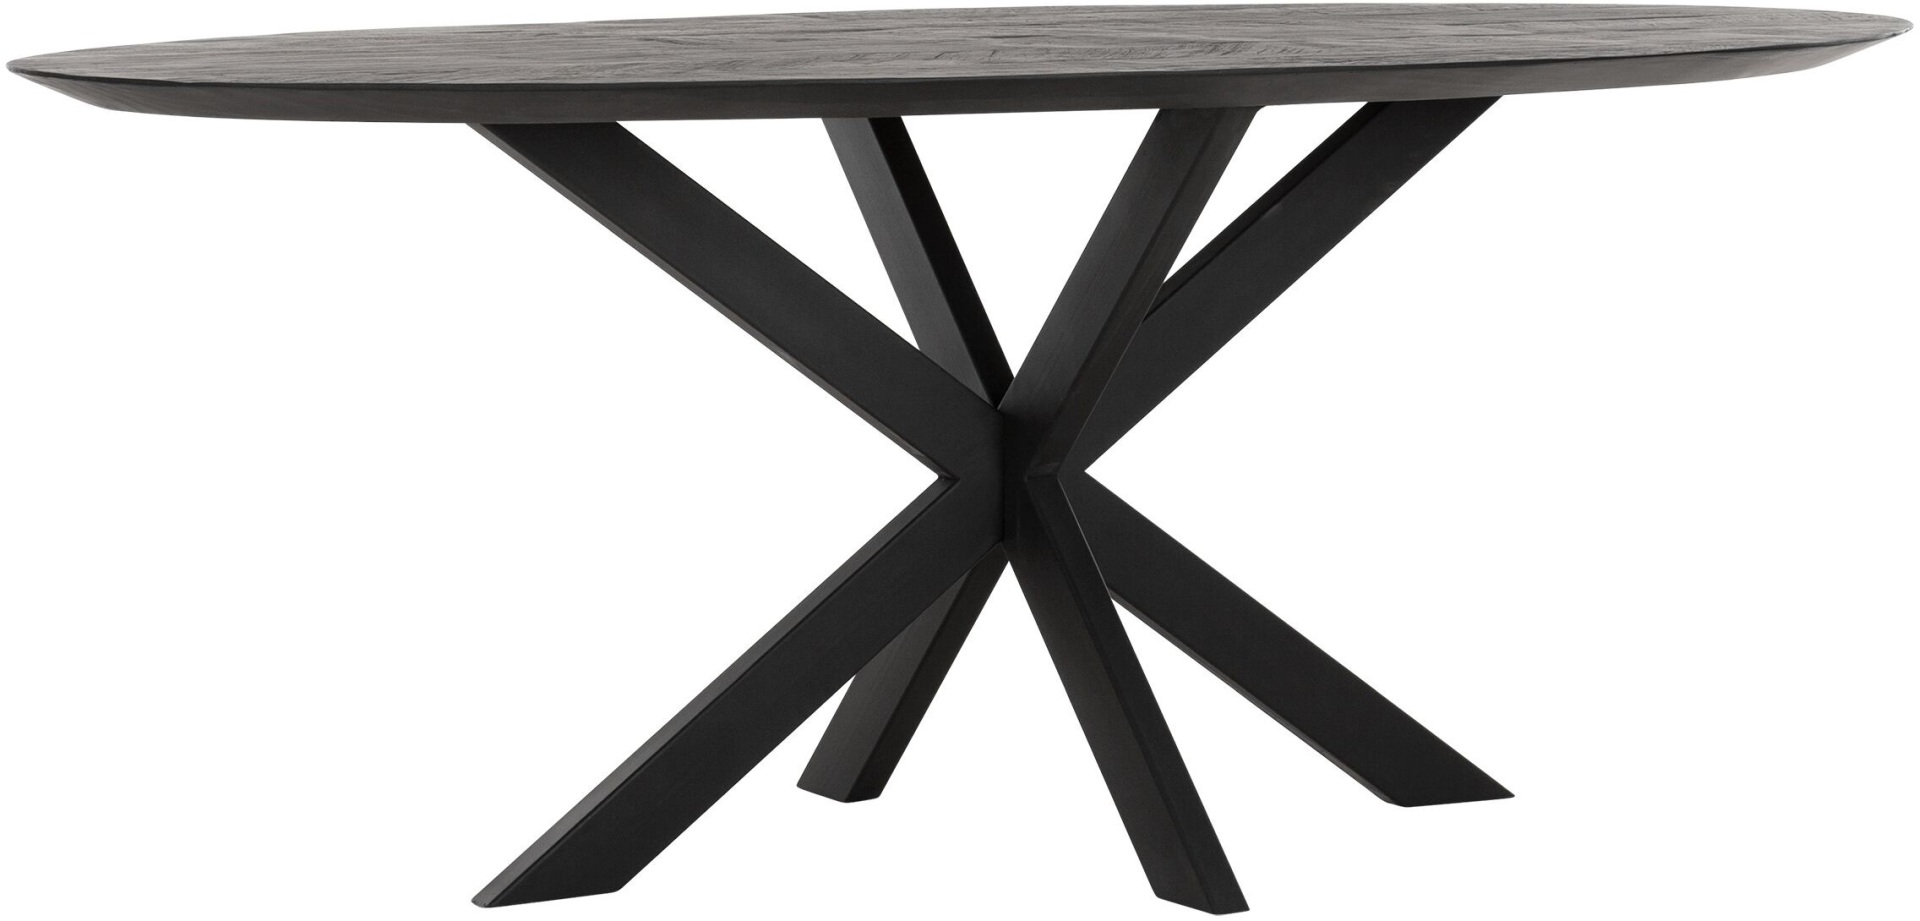 Der Esstisch Shapes überzeugt mit seinem modernem aber auch massivem Design. Gefertigt wurde der Tisch aus recyceltem Teakholz, welches einen schwarzen Farbton besitzt. Das Gestell ist aus Metall und ist Schwarz. Der Tisch hat eine Länge von 200 cm.